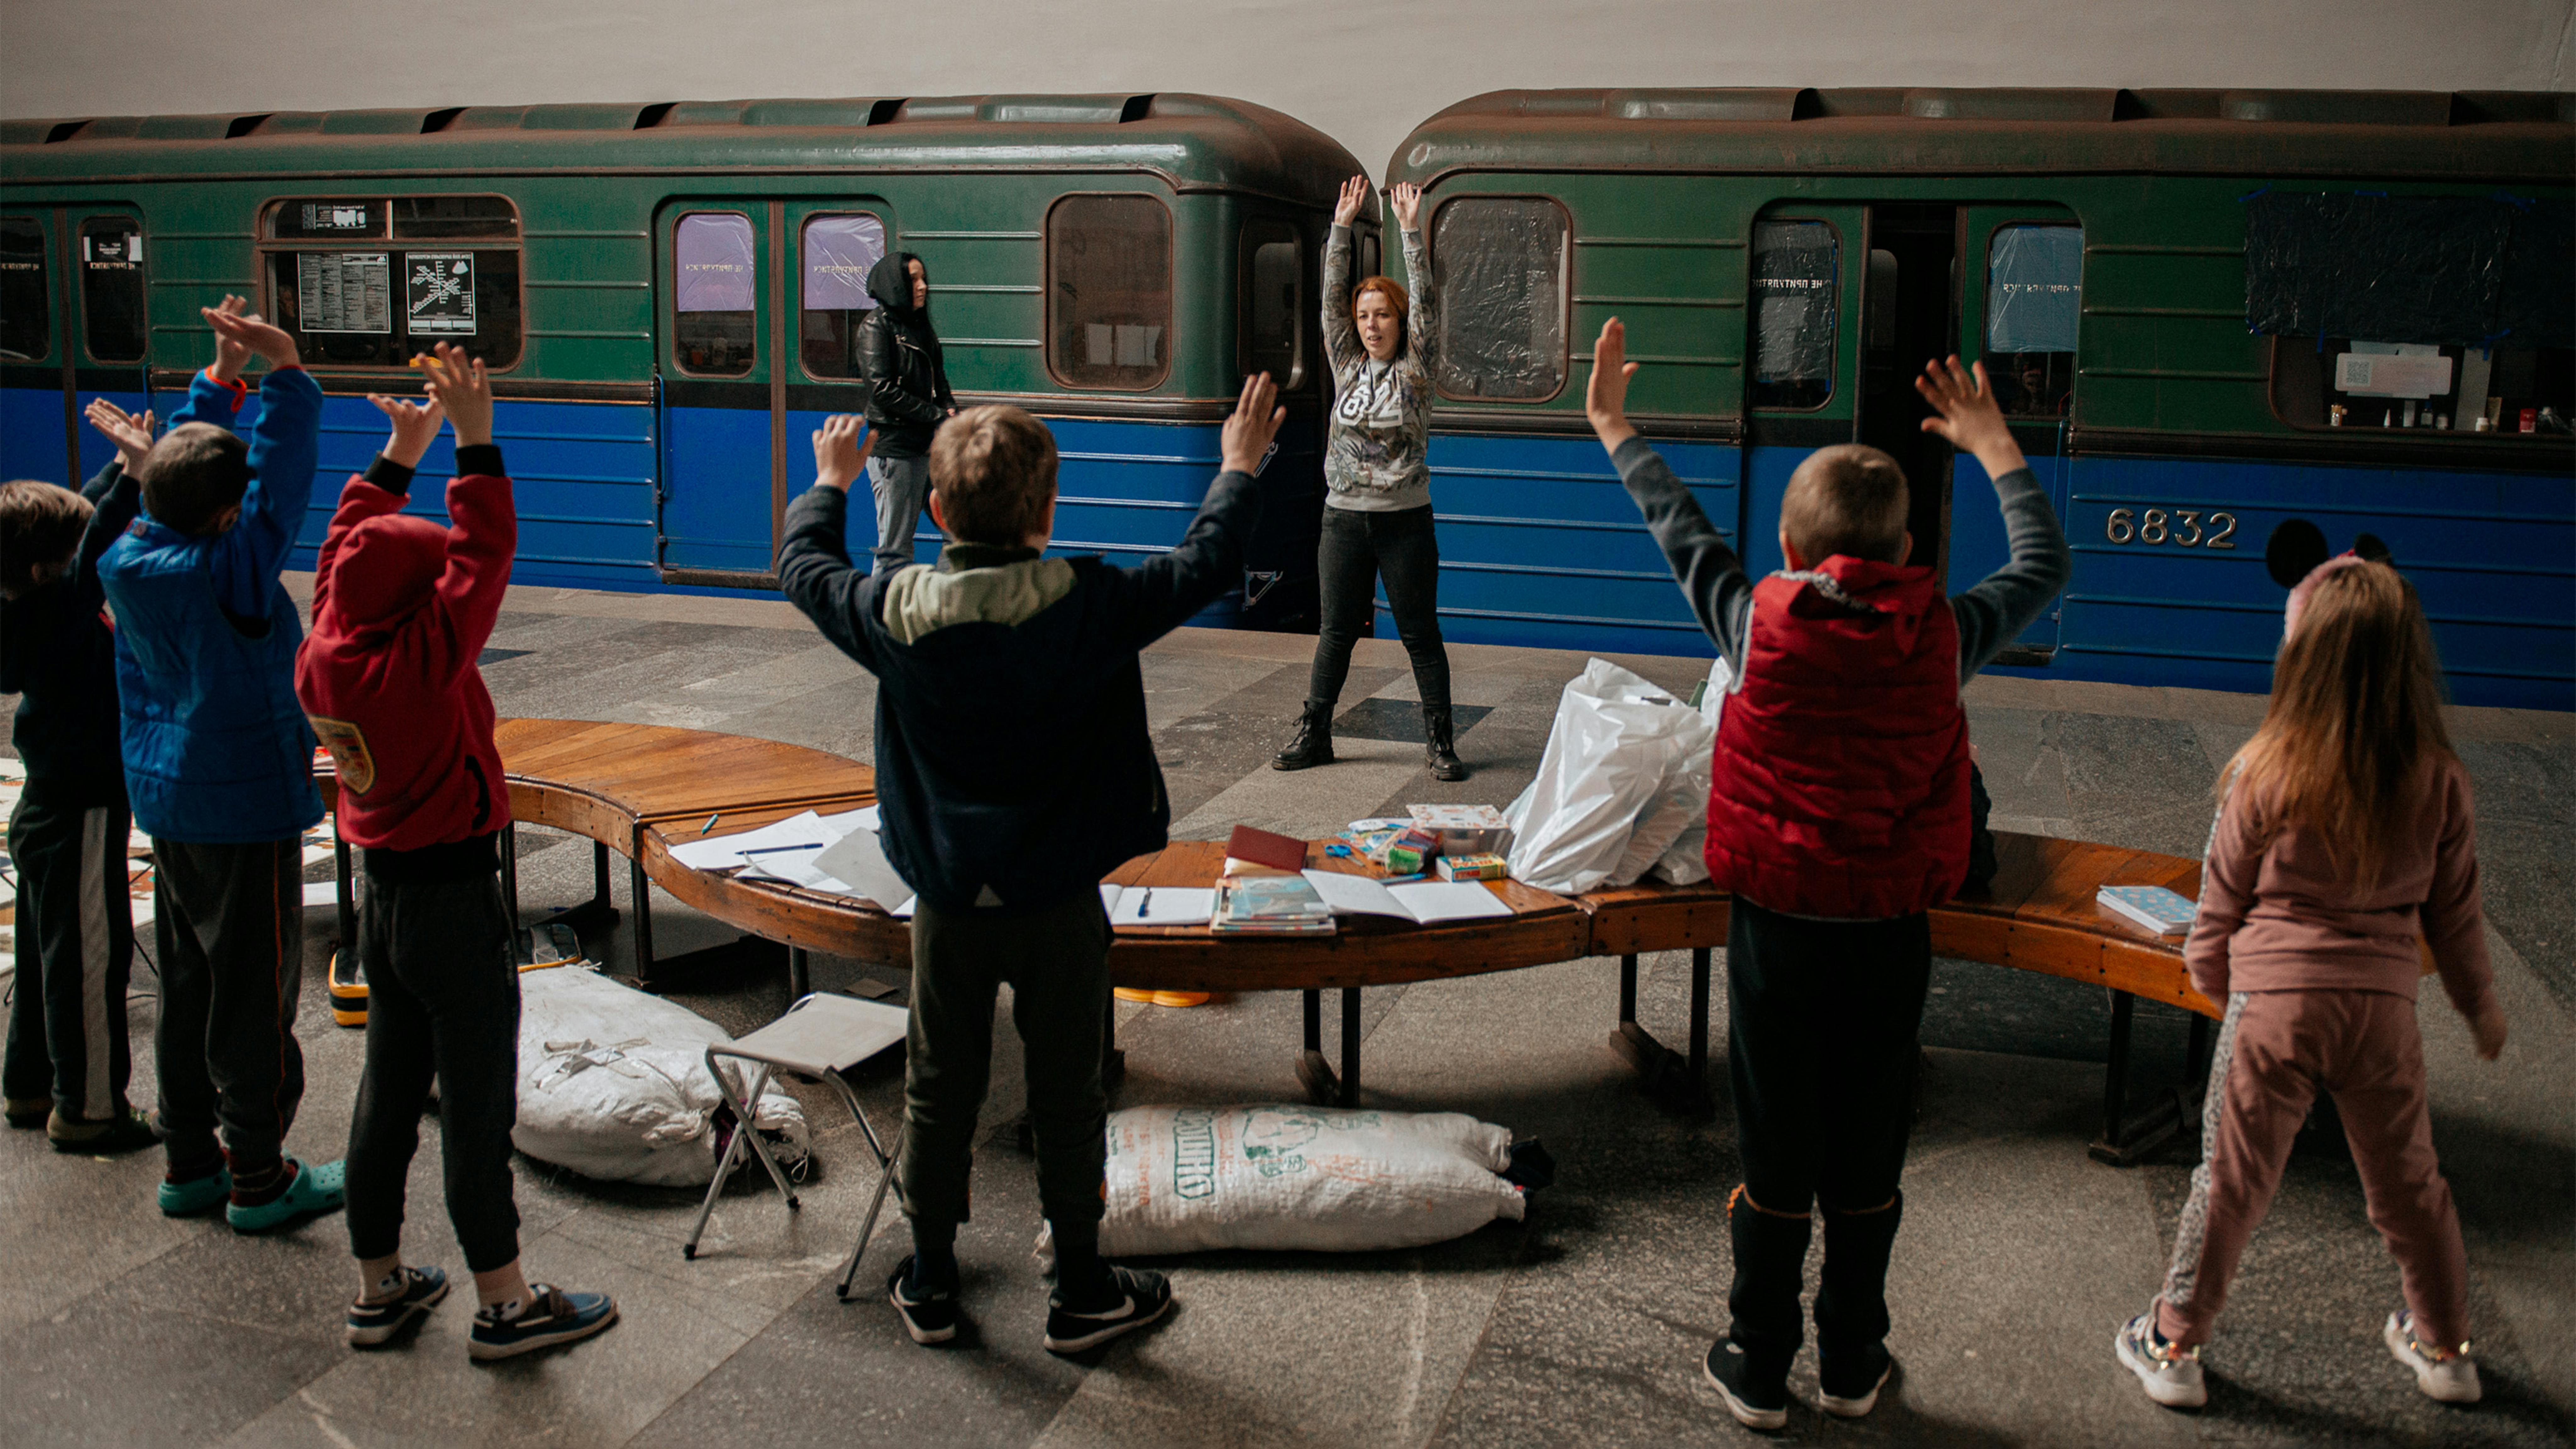 La volontaria Yuliia Kruhlaia, 41 anni, conduce una lezione di riscaldamento per bambini in una delle stazioni della metropolitana di Kharkiv.